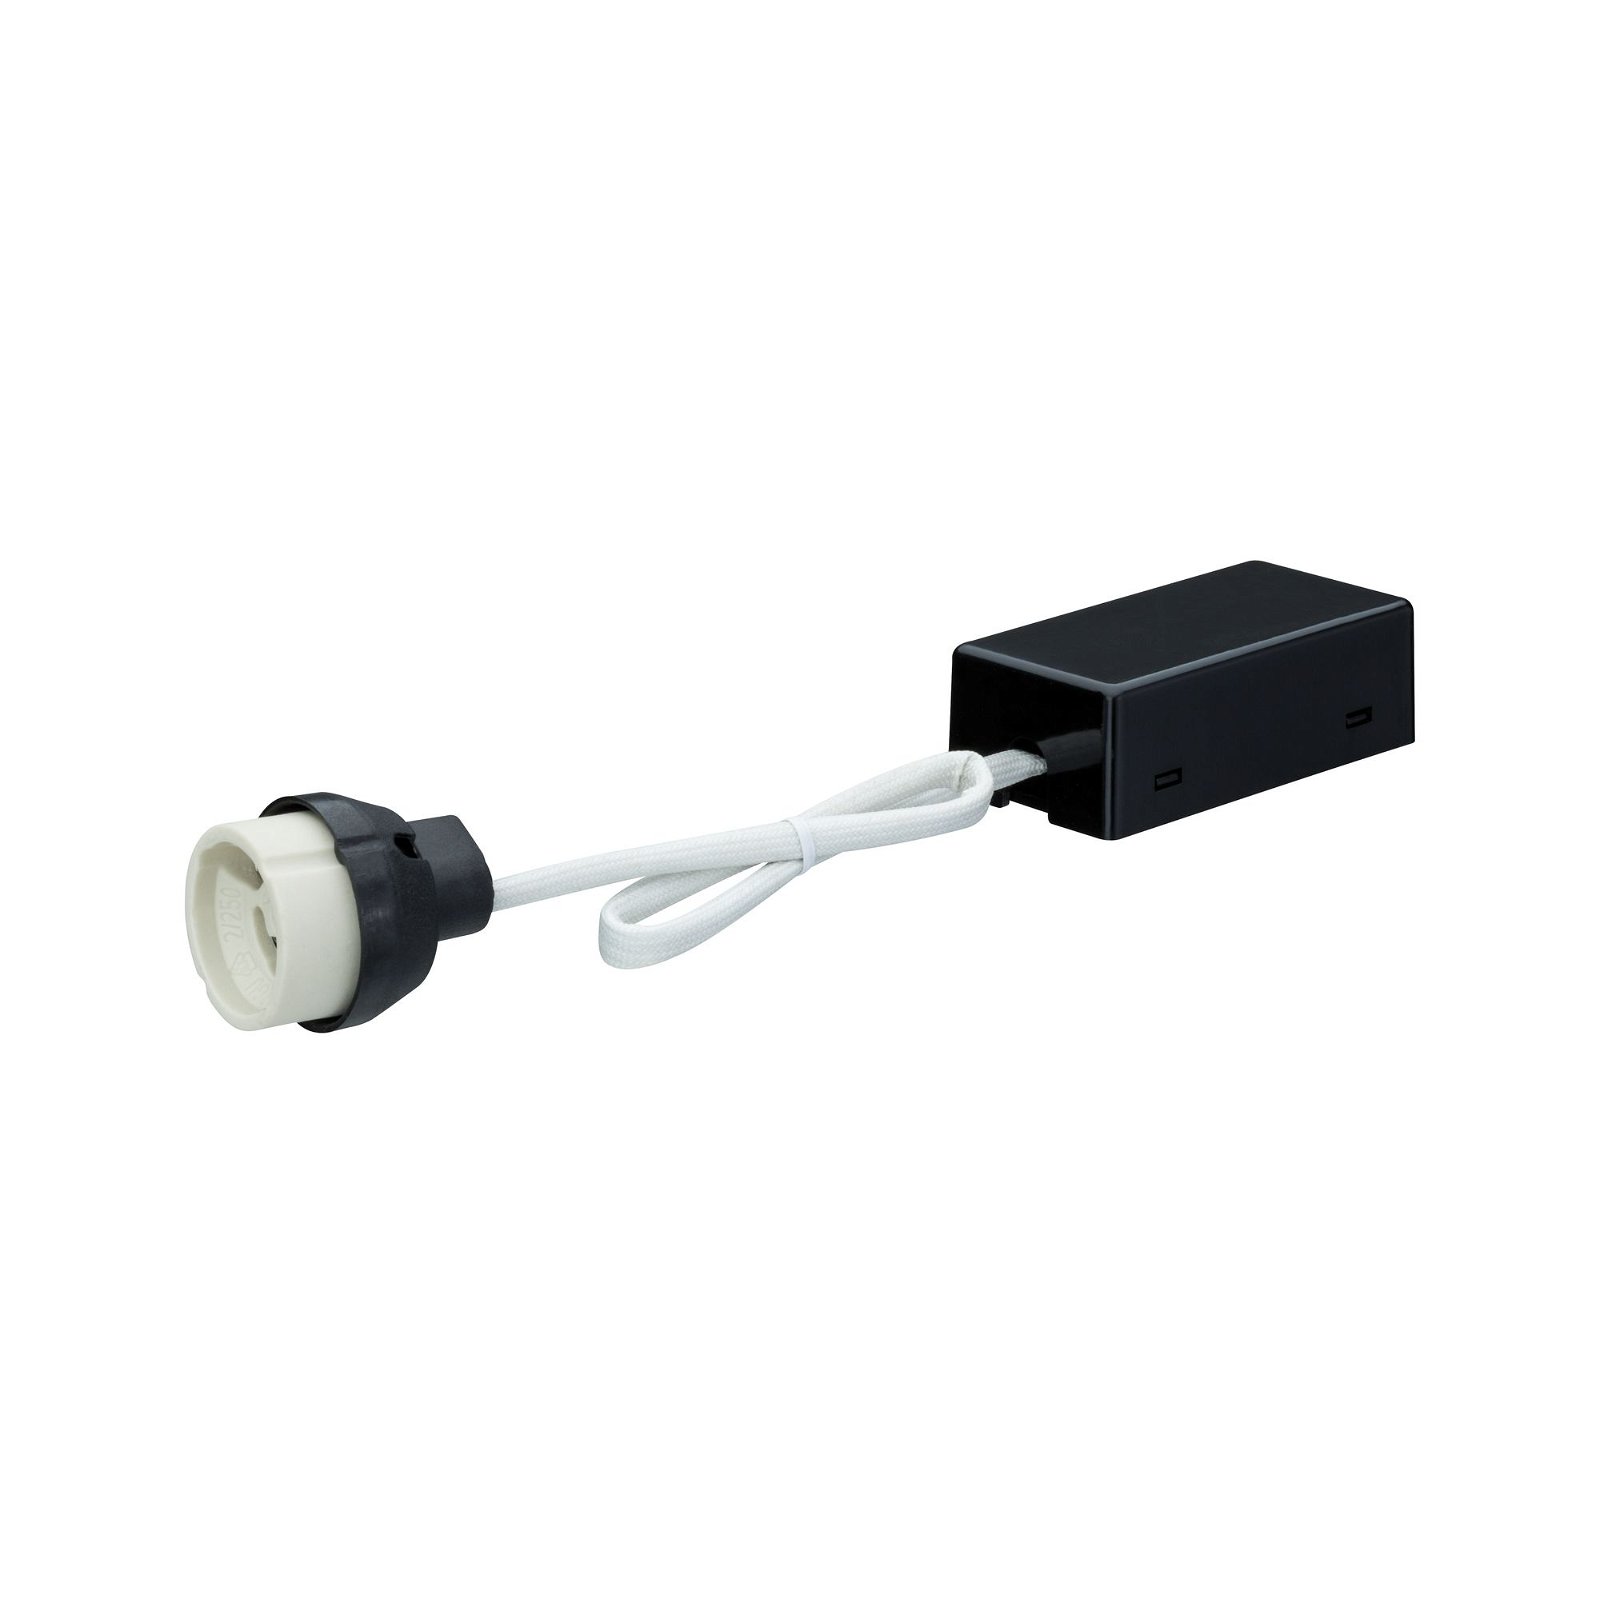 Recessed luminaires accessories Kit de connexion avec clips de fixation inclus 70x35mm 230V GU10 Black